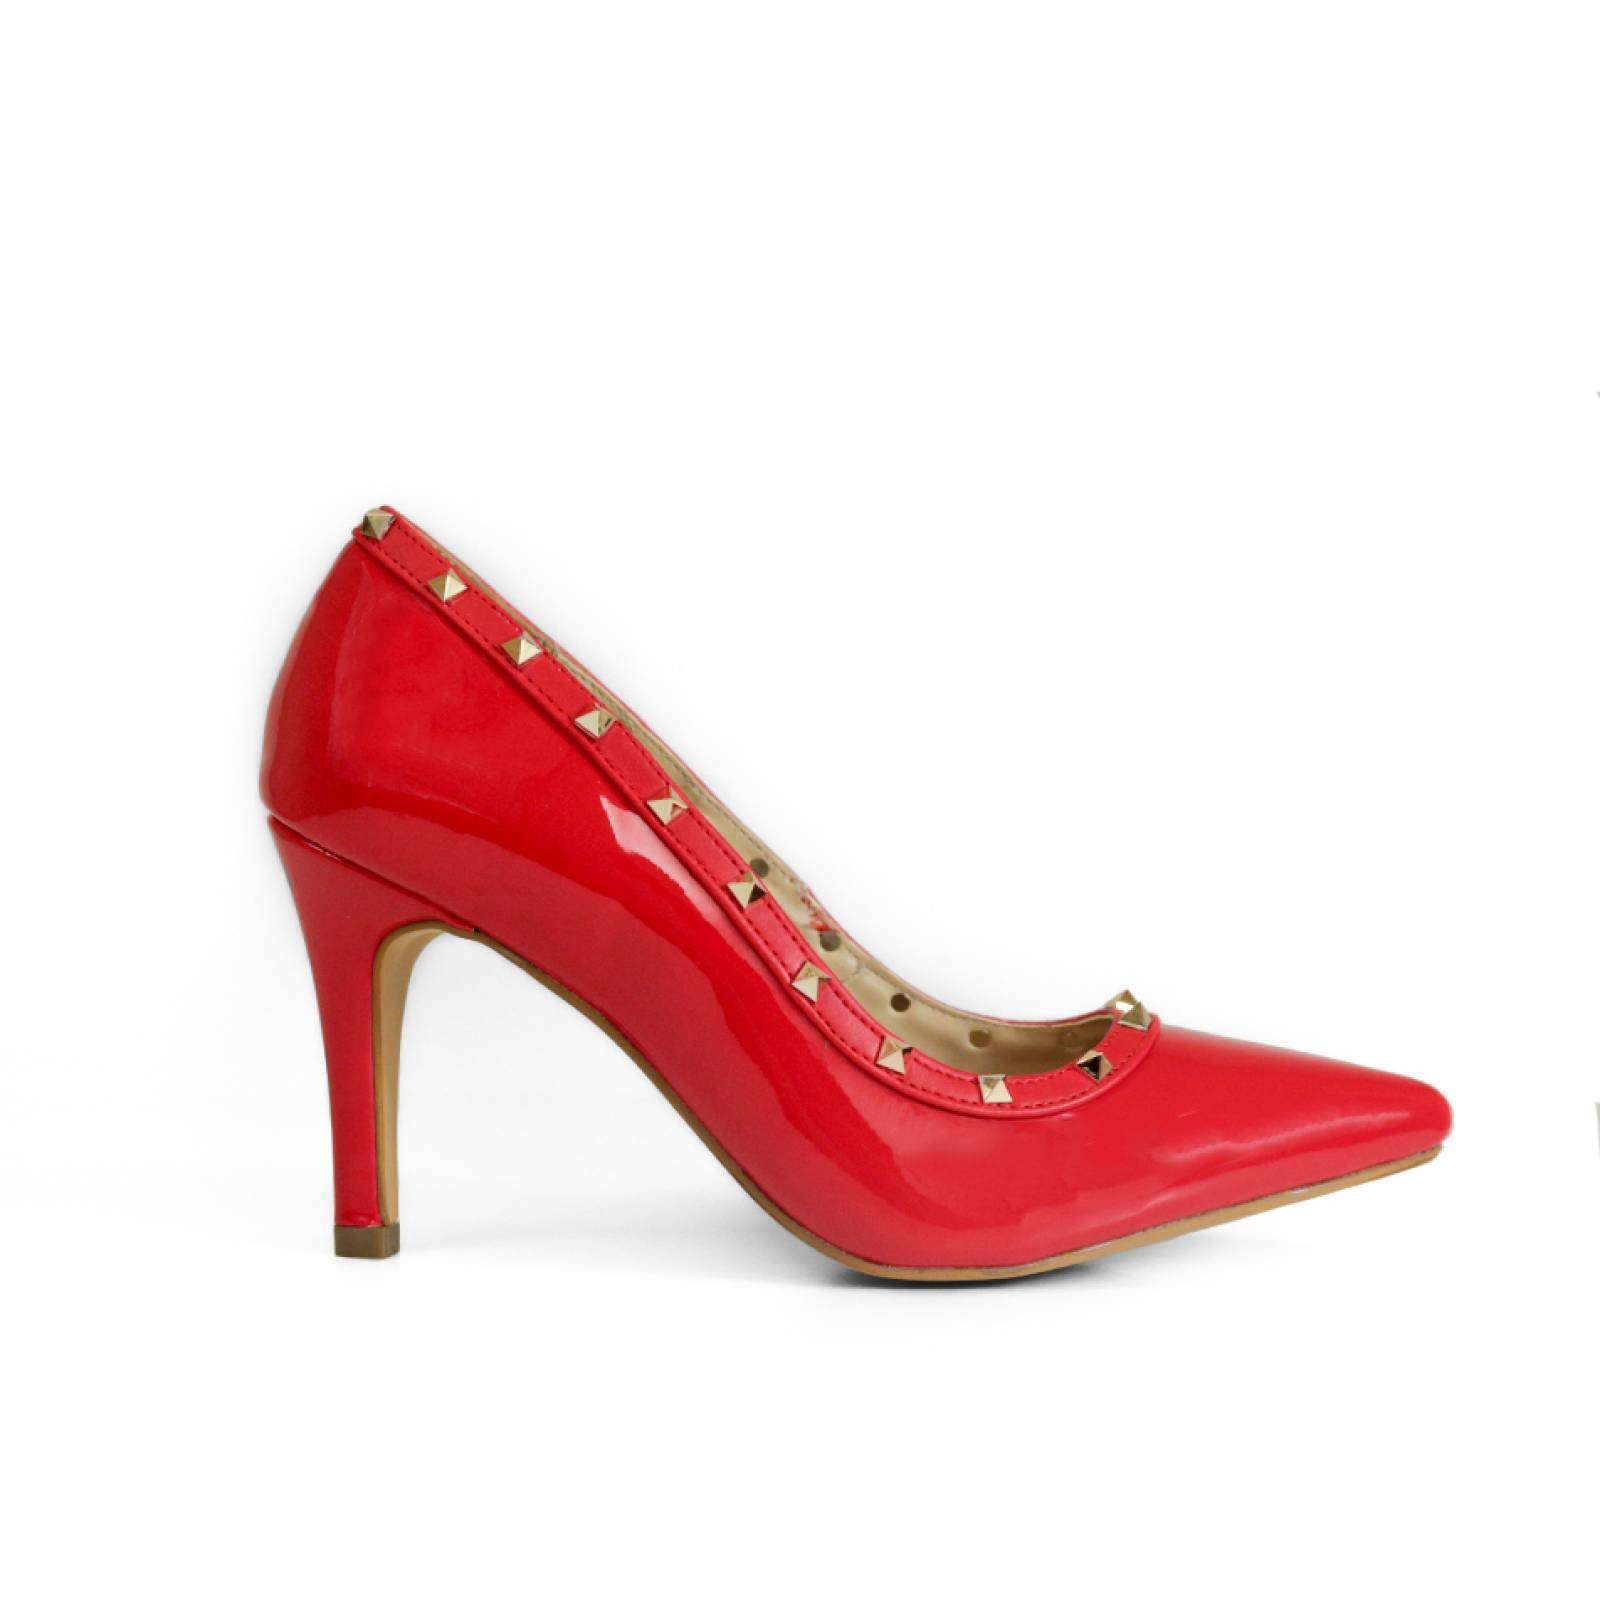 Zapatillas Urbanas para Mujer MIA22-132 Rojo